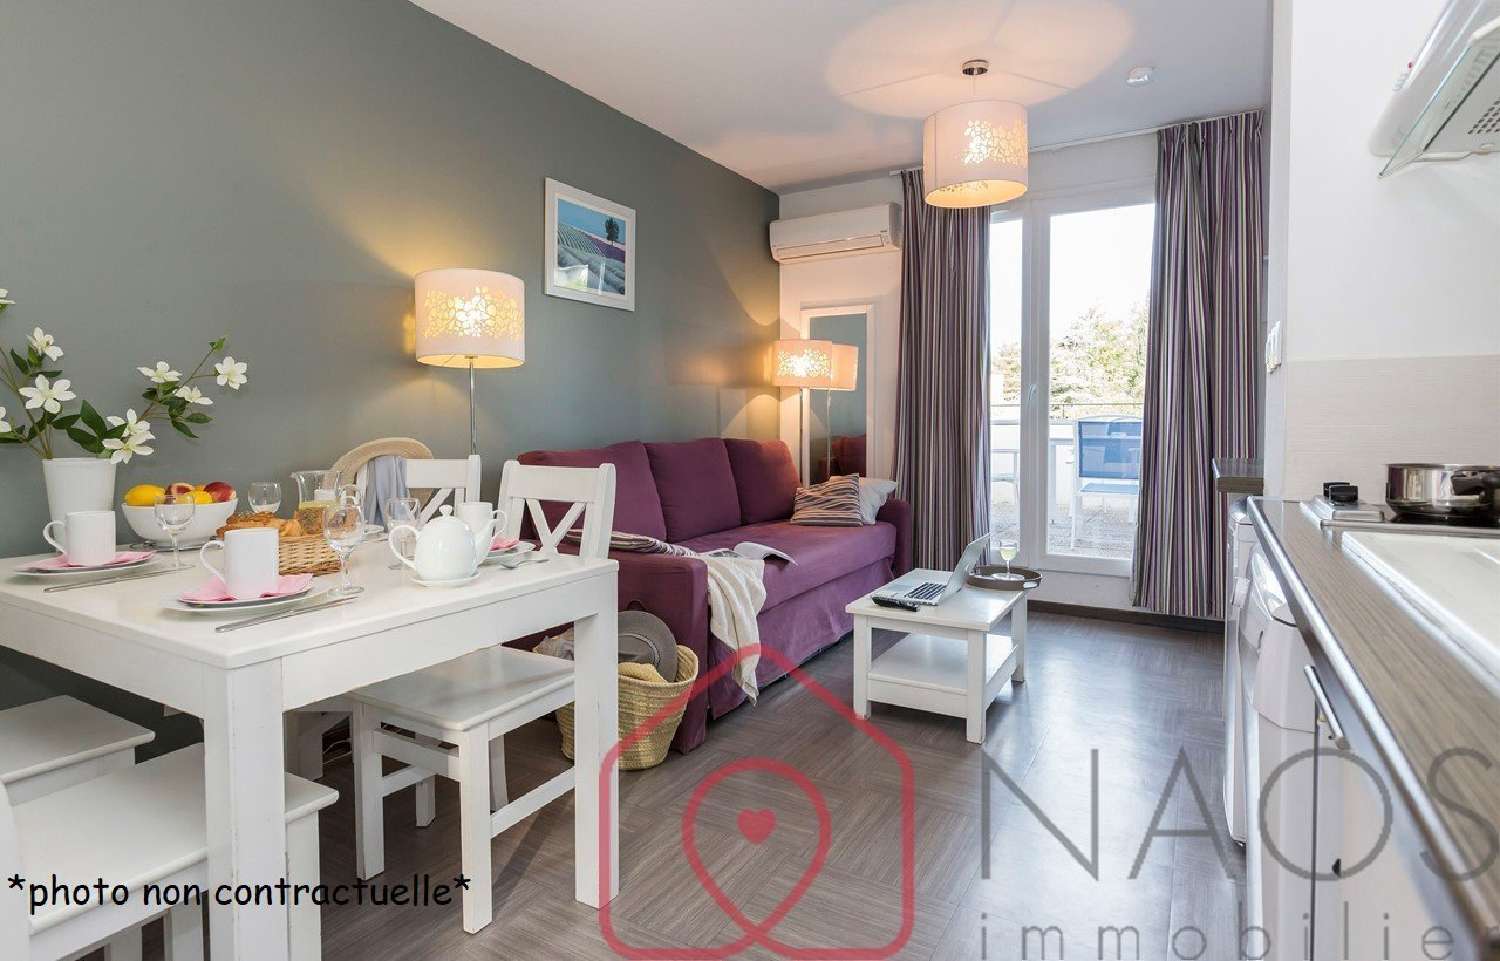 Gréoux-les-Bains Alpes-de-Haute-Provence Wohnung/ Apartment Bild 6853523